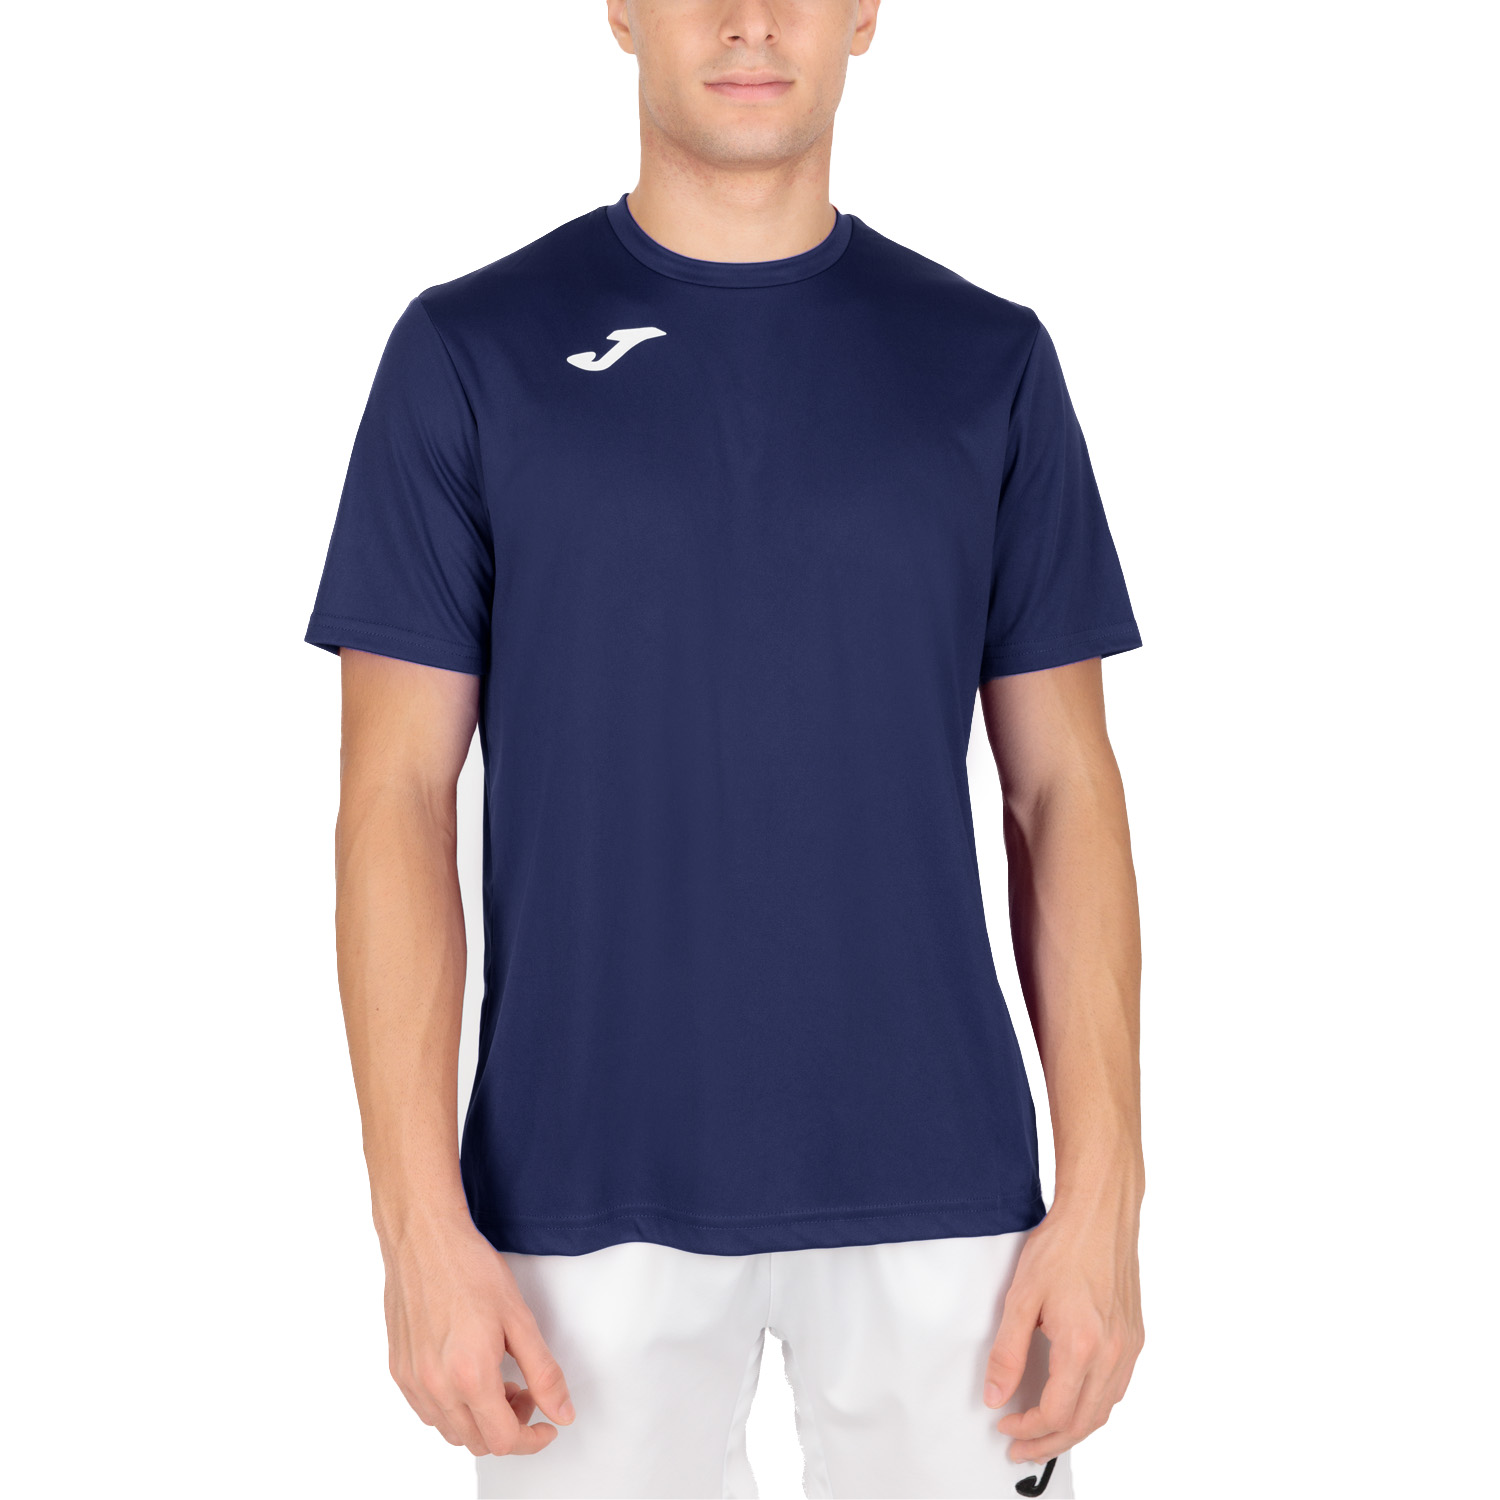 Joma Combi T-Shirt - Dark Navy/White